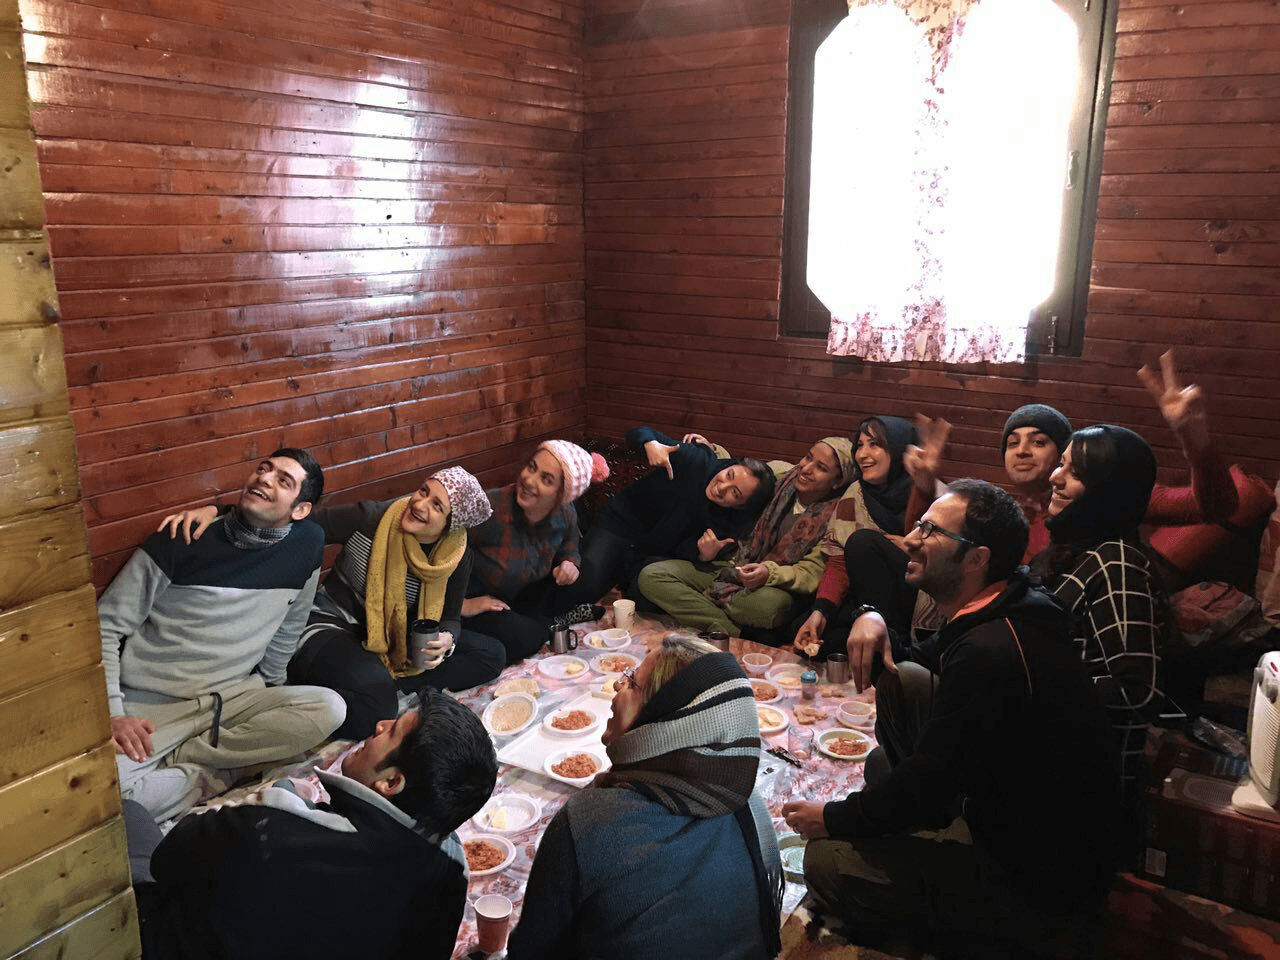 مهدی پارسا - عکس از سفر به ماسال ۹۵ - Mehdi Parsa Masal trip